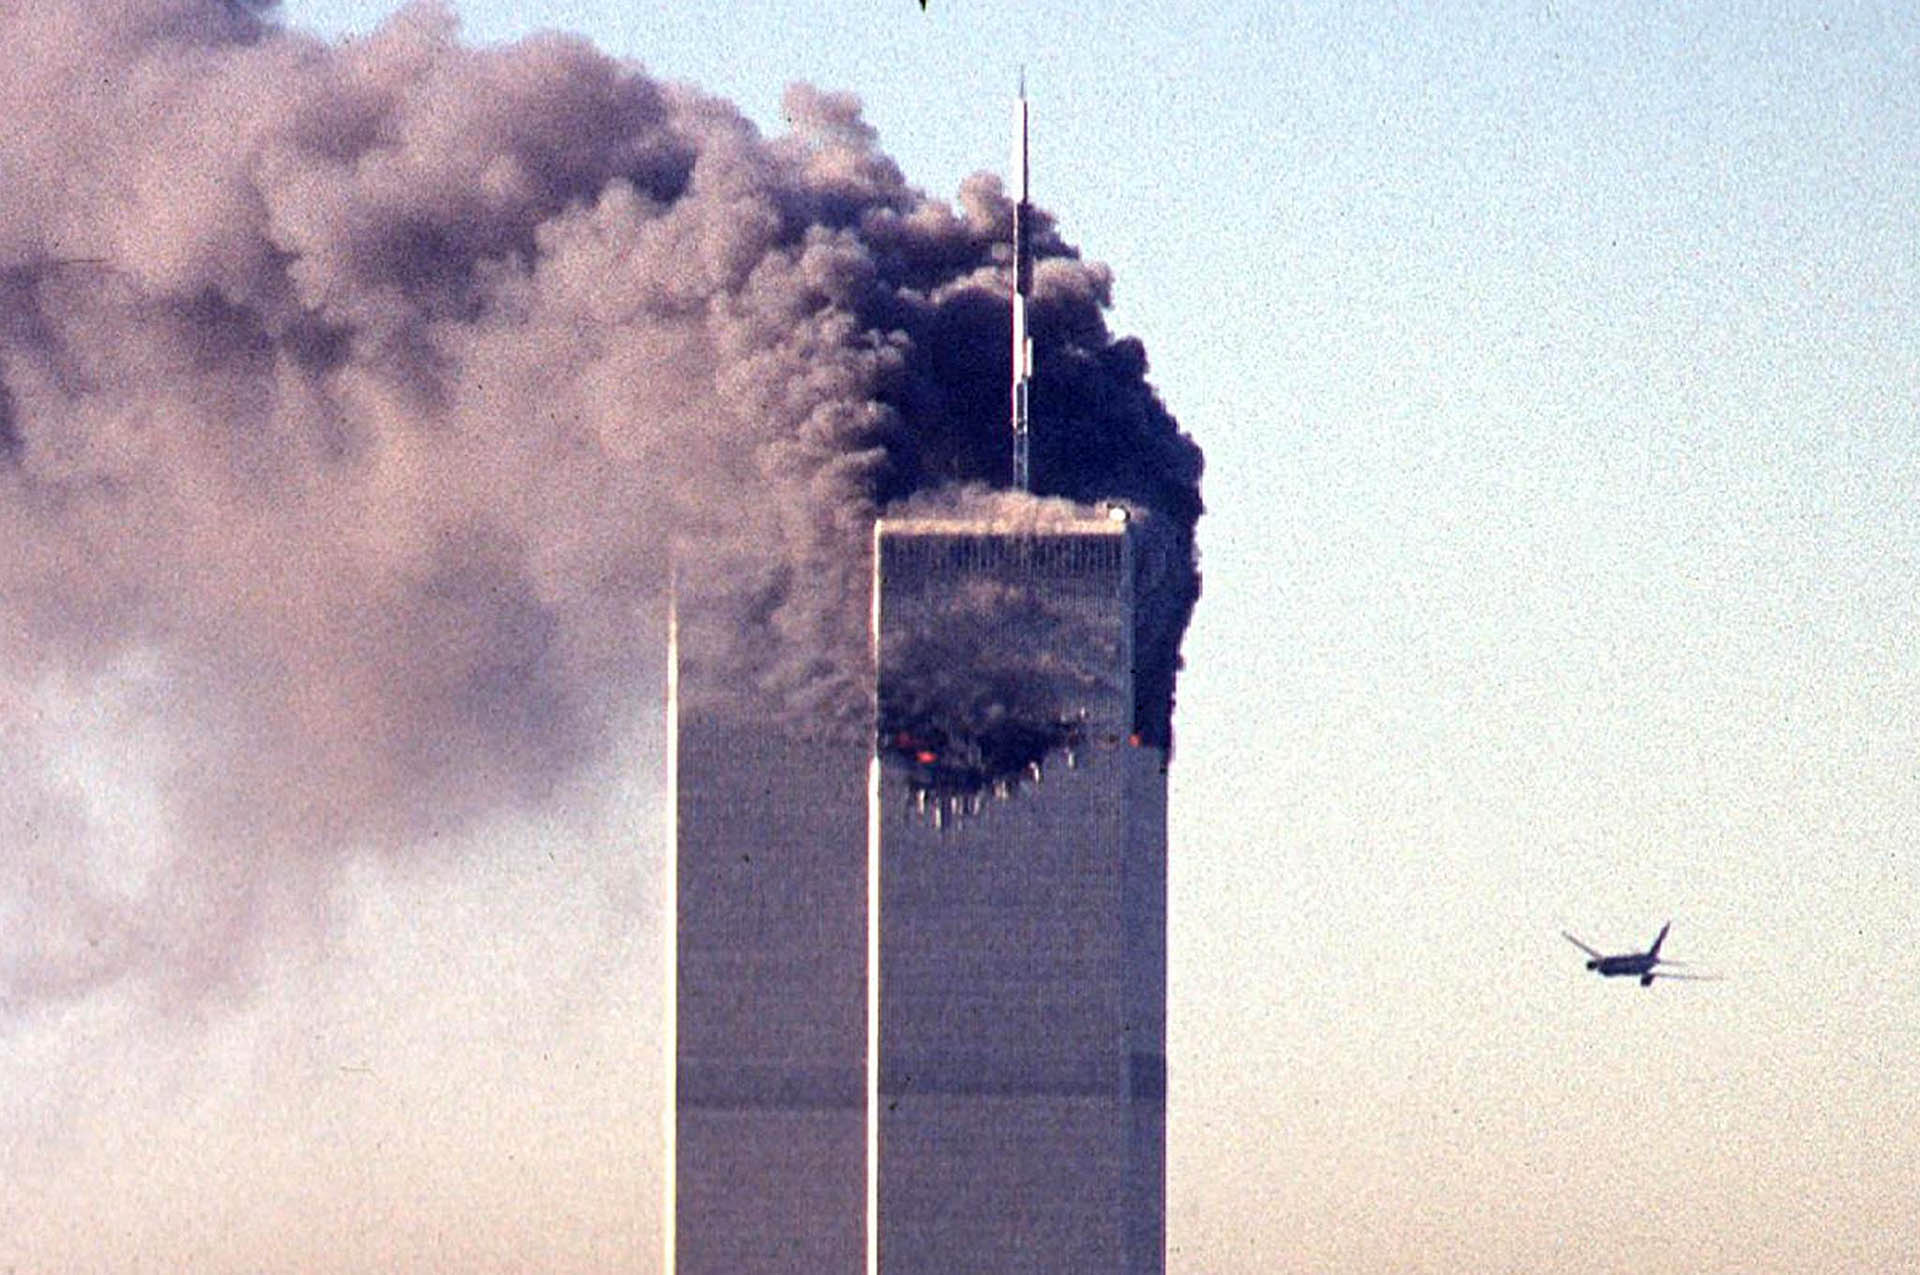 9/11 merénylői és a szaúdi kormány kapcsolatát vizsgálta az FBI